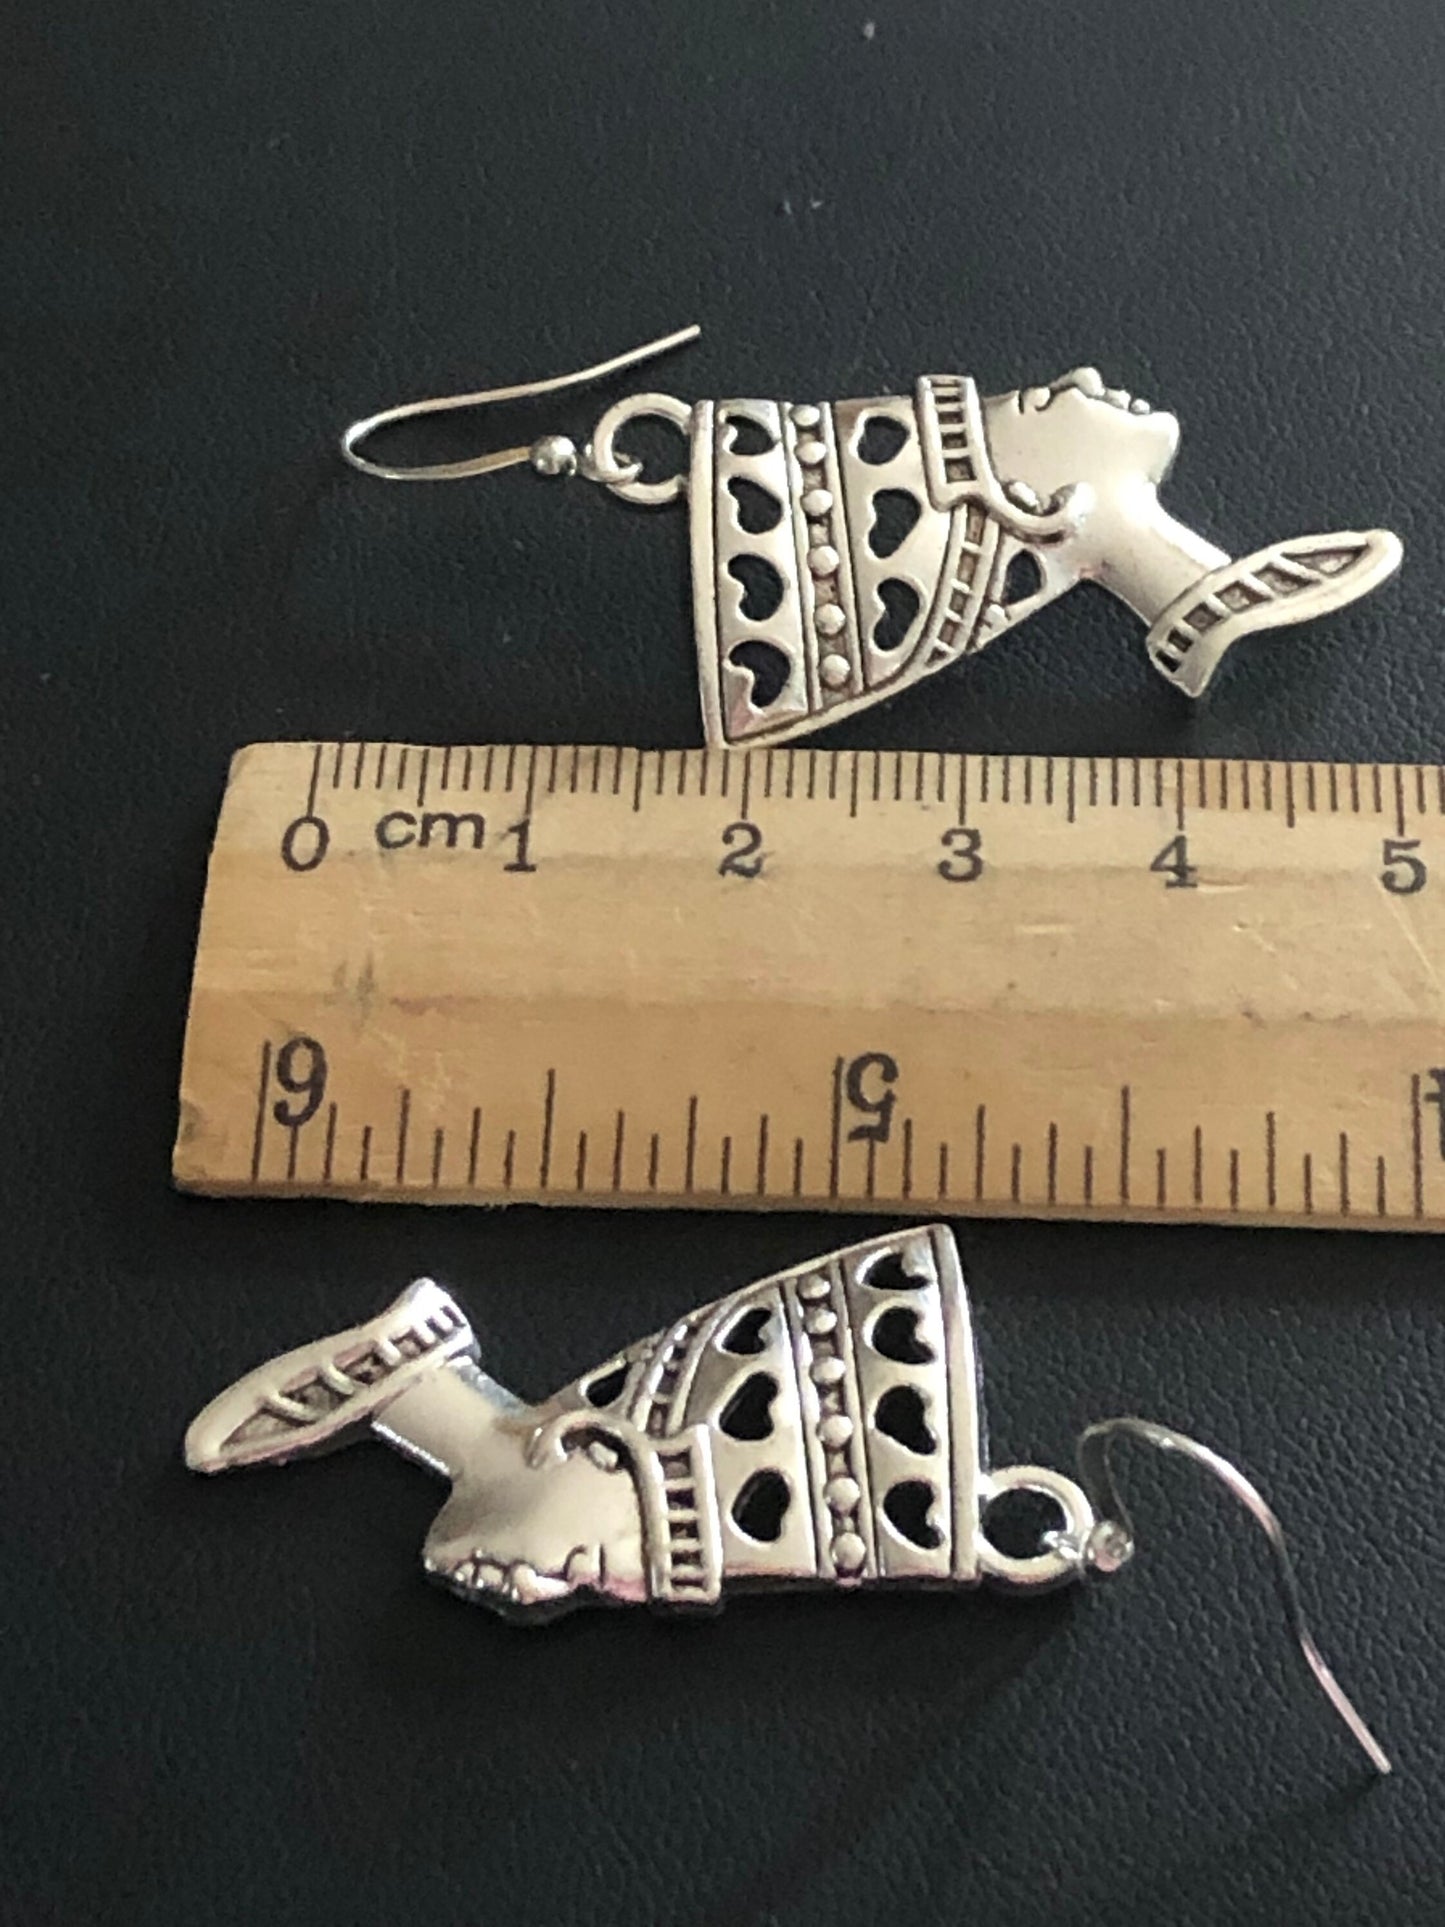 Silver tone Egyptian revival style queen Nefertiti 5cm drop earrings